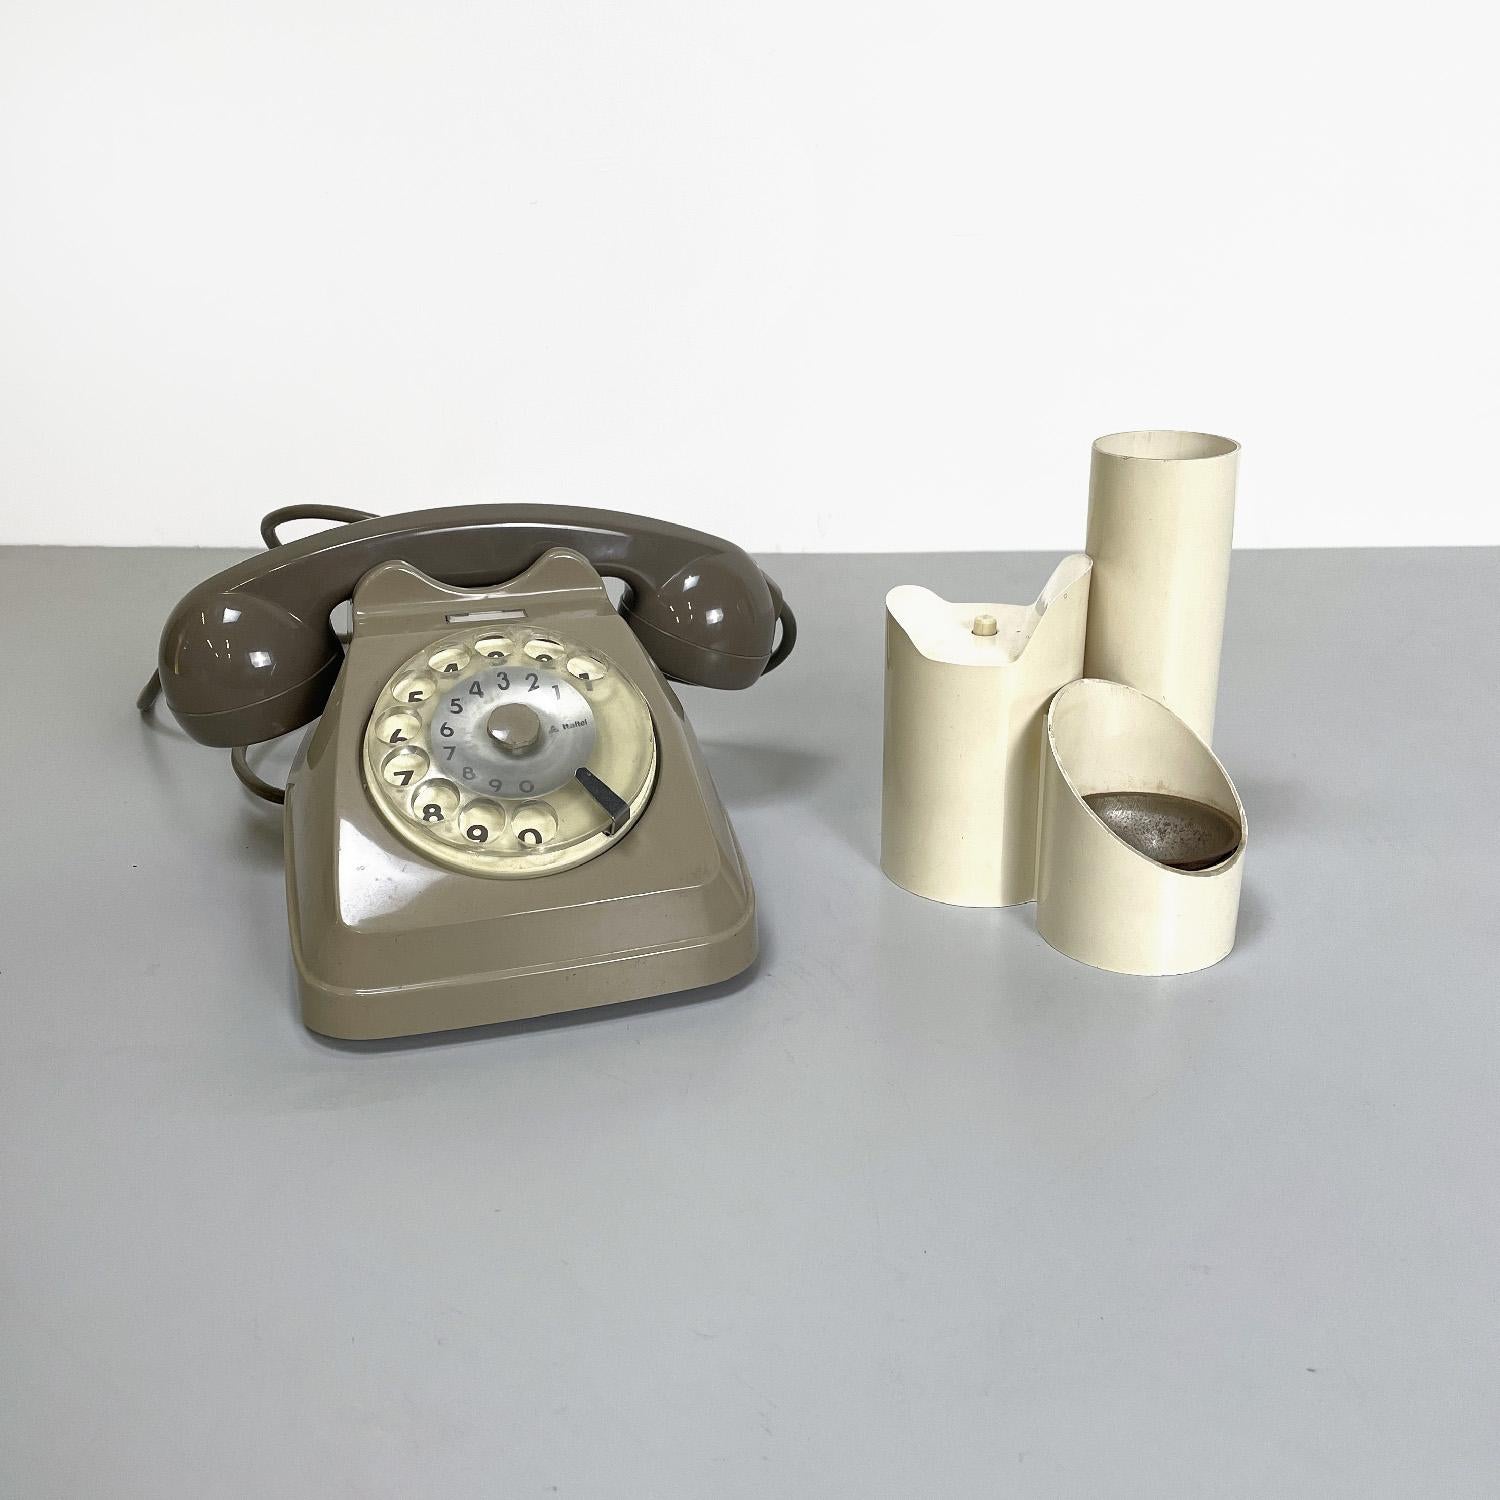 Italienisches Siemens Sip-Telefon aus der Mitte des Jahrhunderts mit Hörerhalterung Spieluhr, 1960er Jahre
Set bestehend aus einem Festnetztelefon mit Wählscheibe mod. Sip und Hörer Musikbox. Das Telefon ist aus taubengrauem Kunststoff mit einer